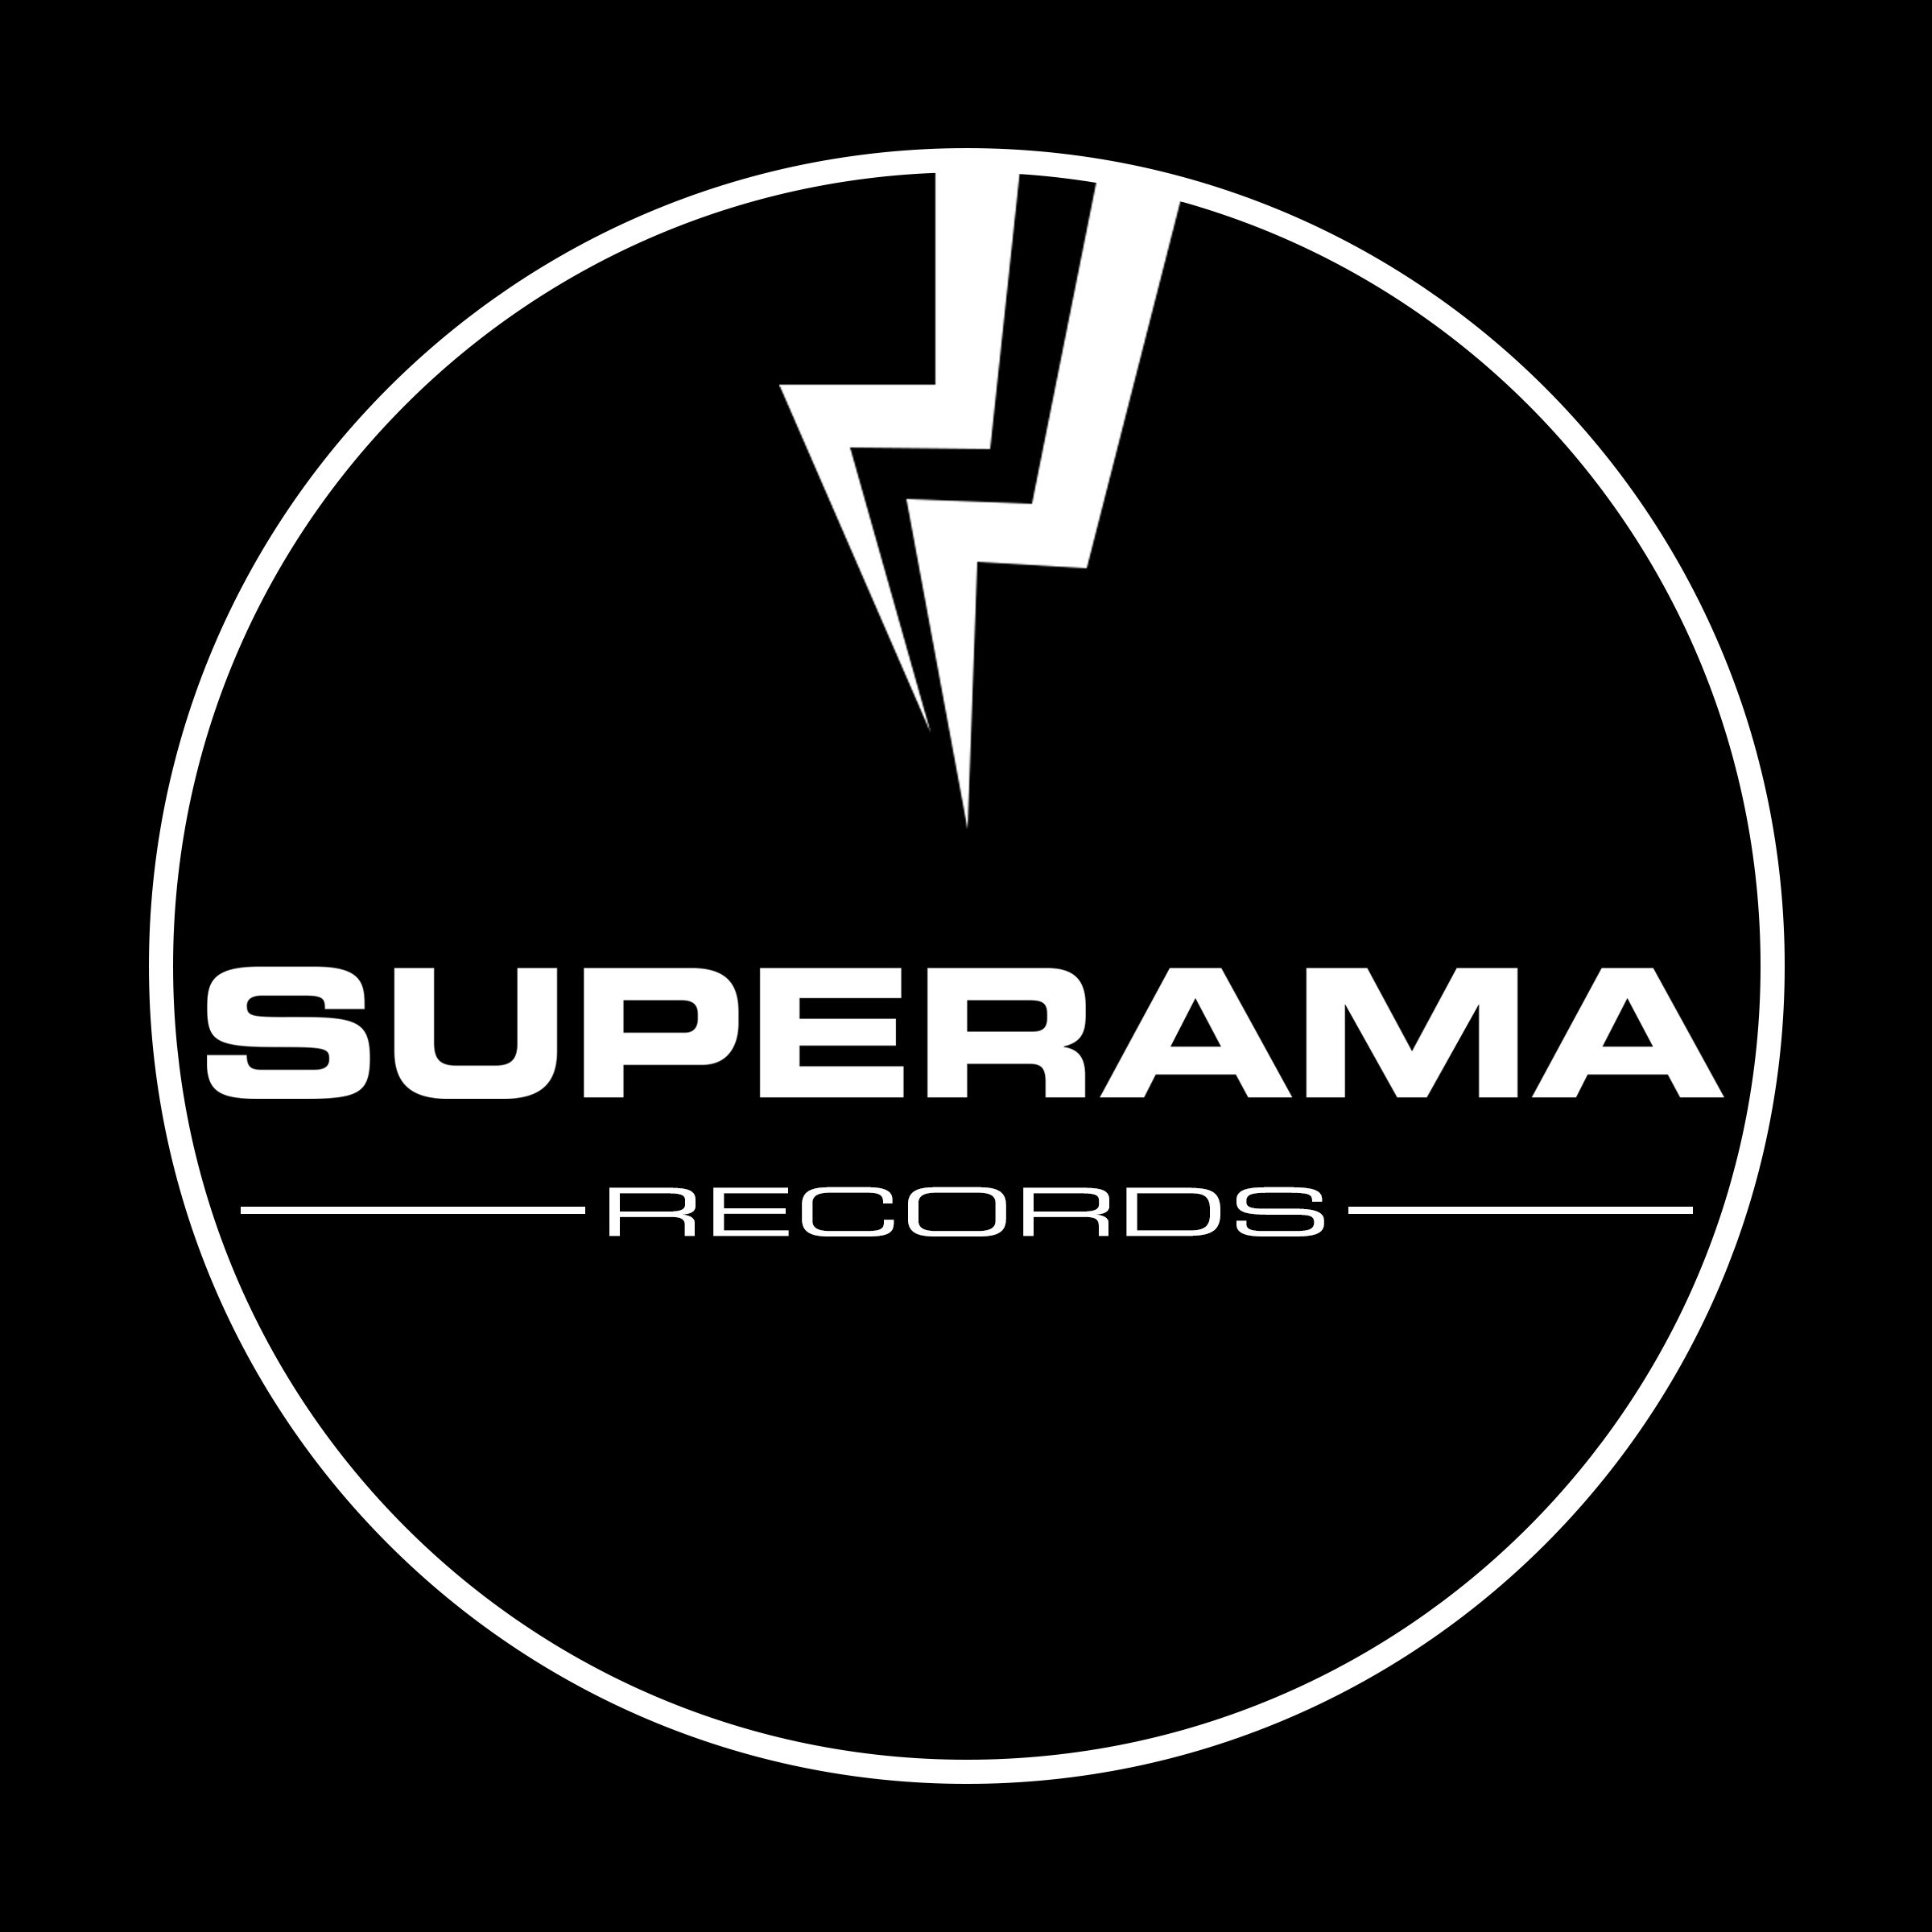 Superama Records